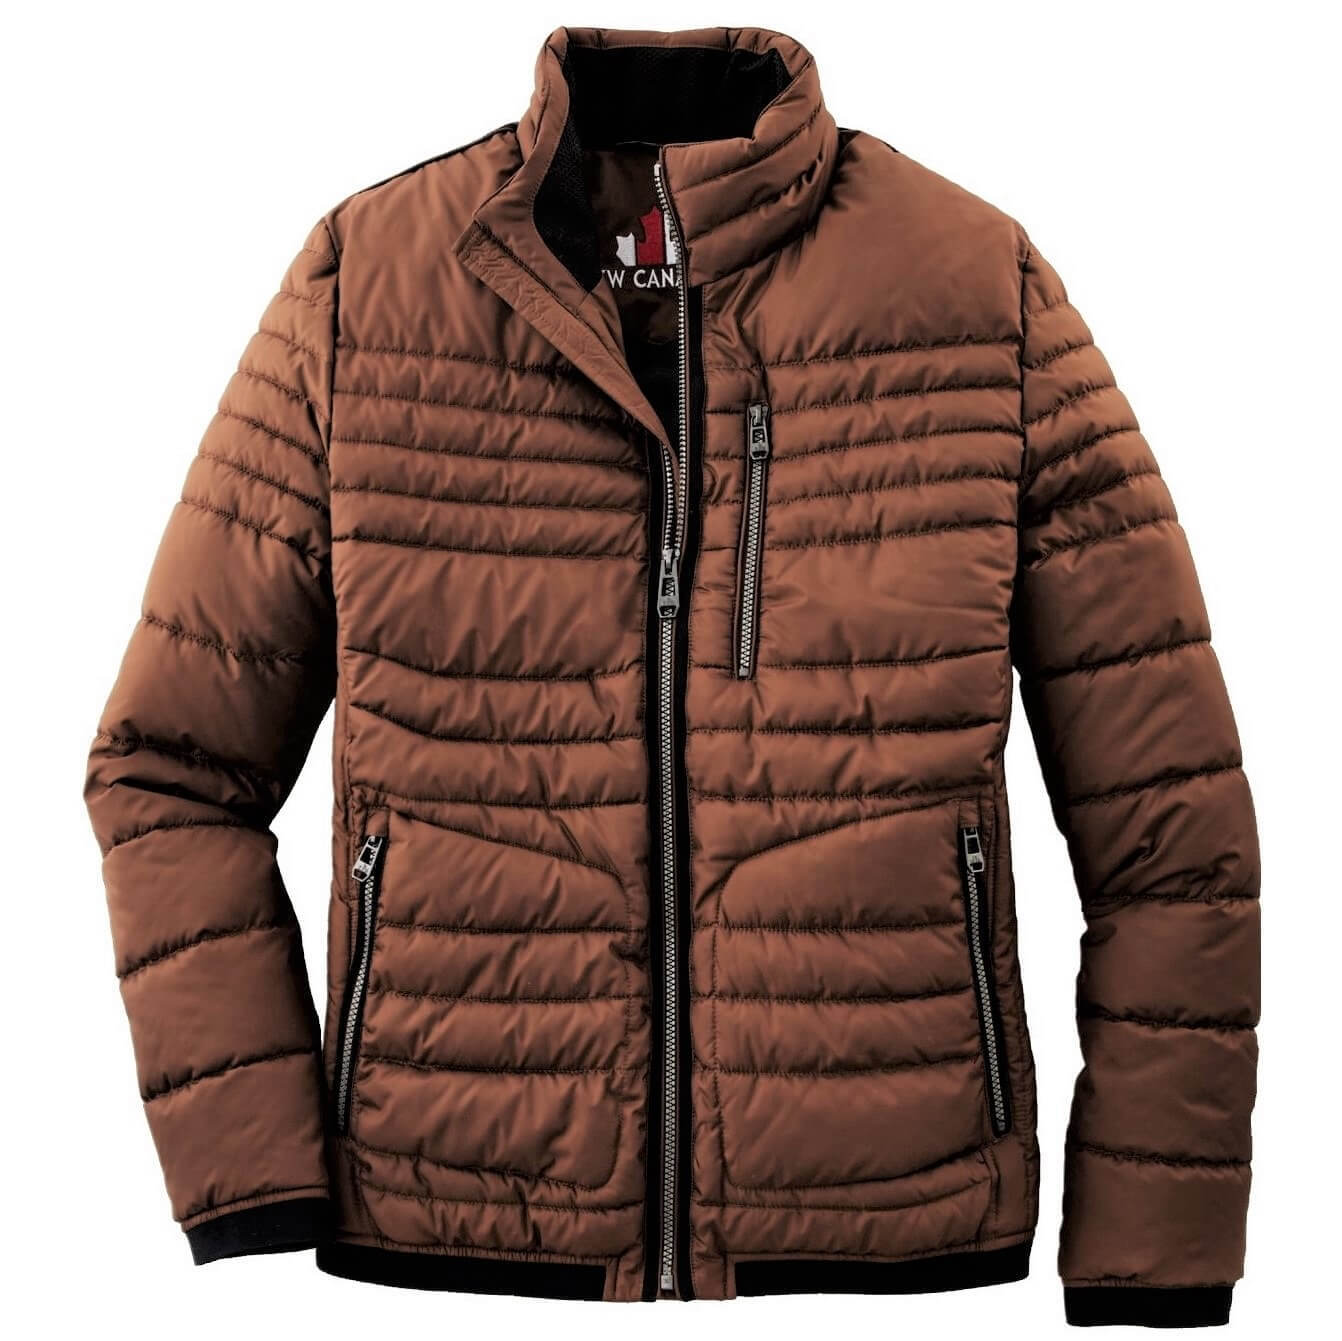 Куртка мужская New Canadian 3129-32236-N-550 цвет Copper («Медный»)